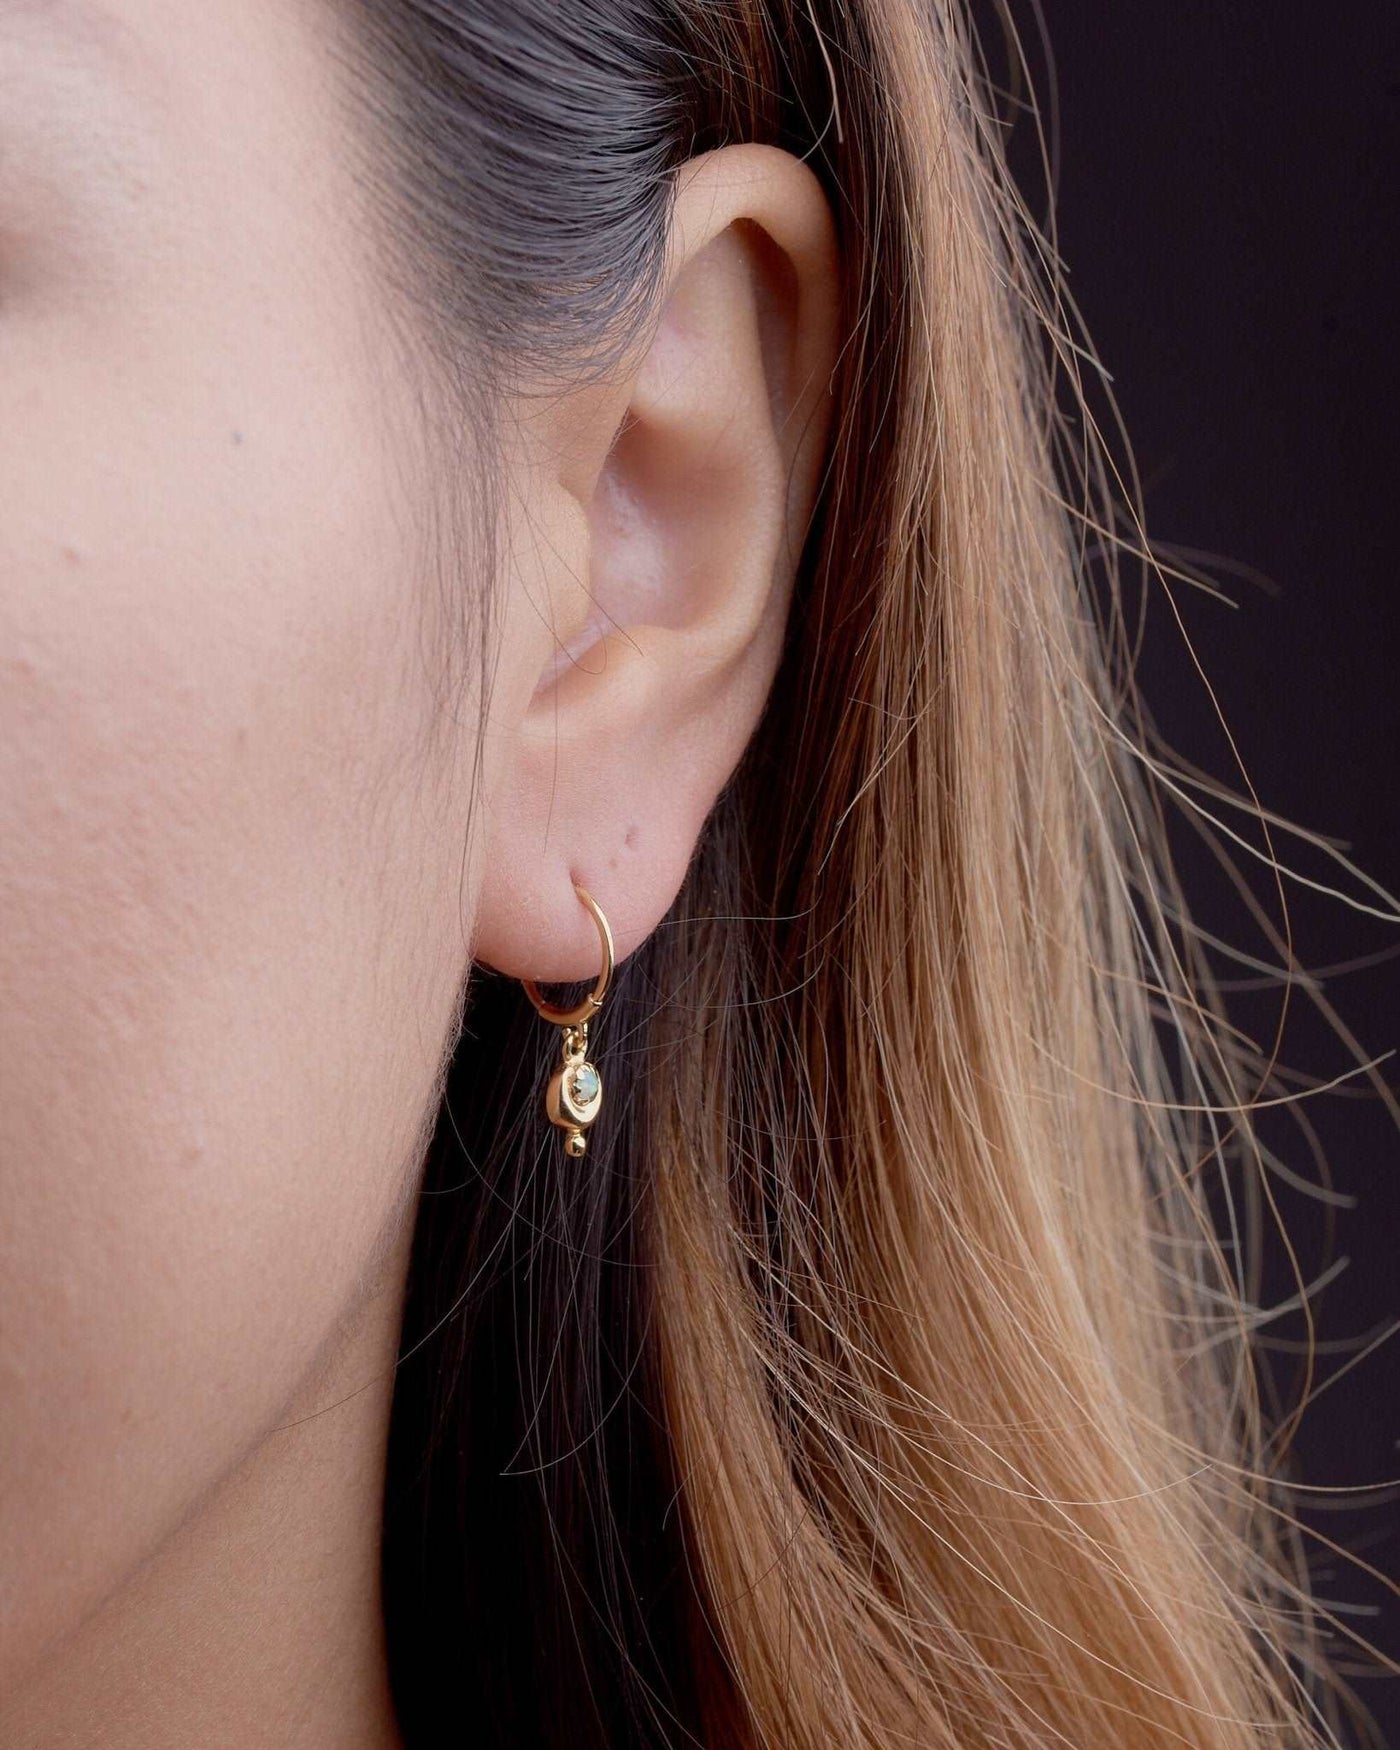 Homa Mini Huggie Earrings - 14K Gold Filled SilverAmethystBackUpItemsCartilage EarringLunai Jewelry